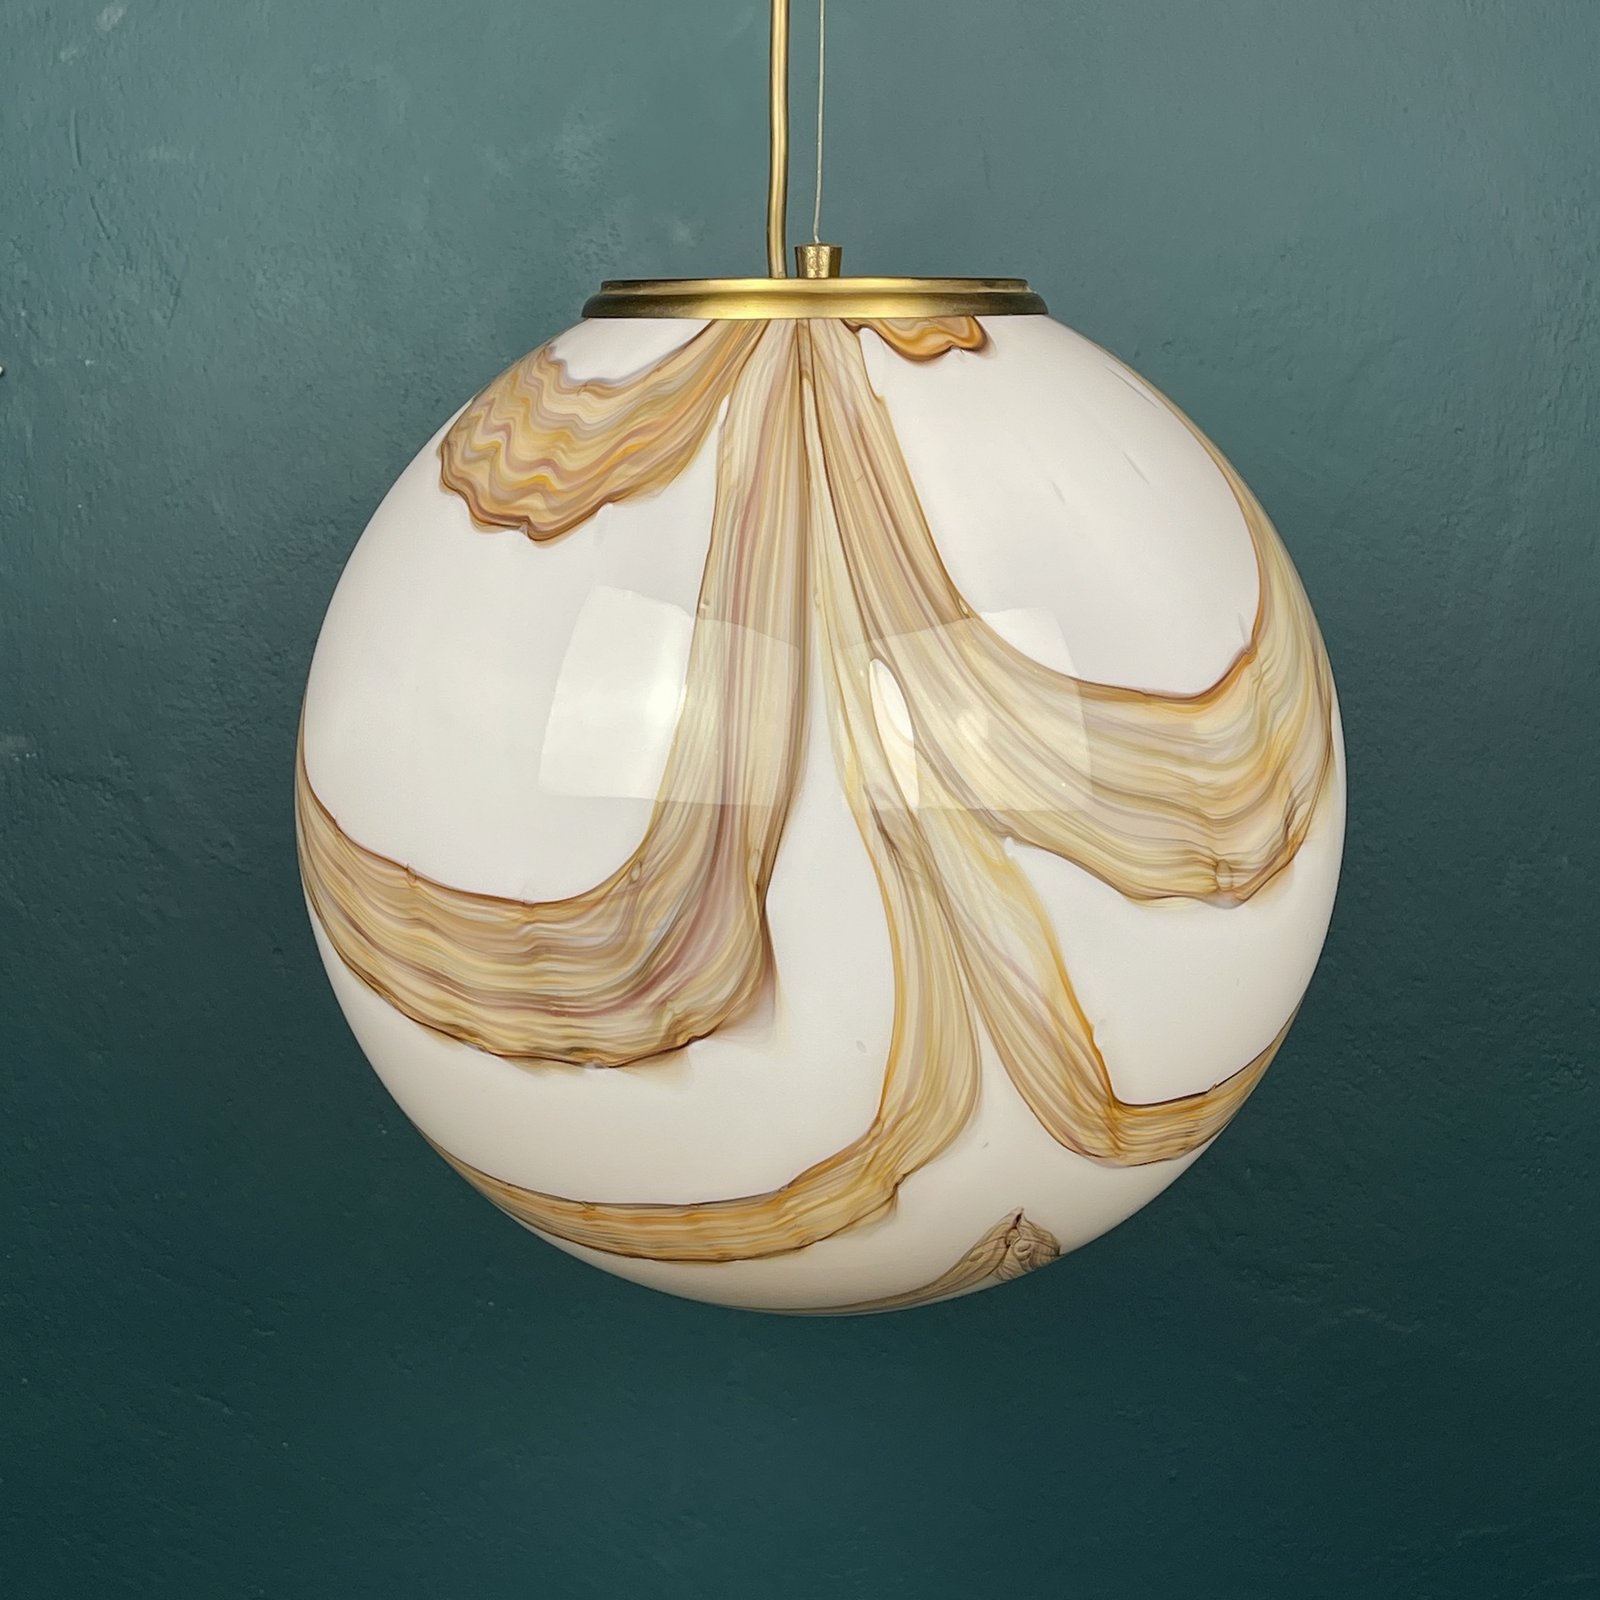 Murano globe pendant lamp Italy 1960s Mid-century modern lighting